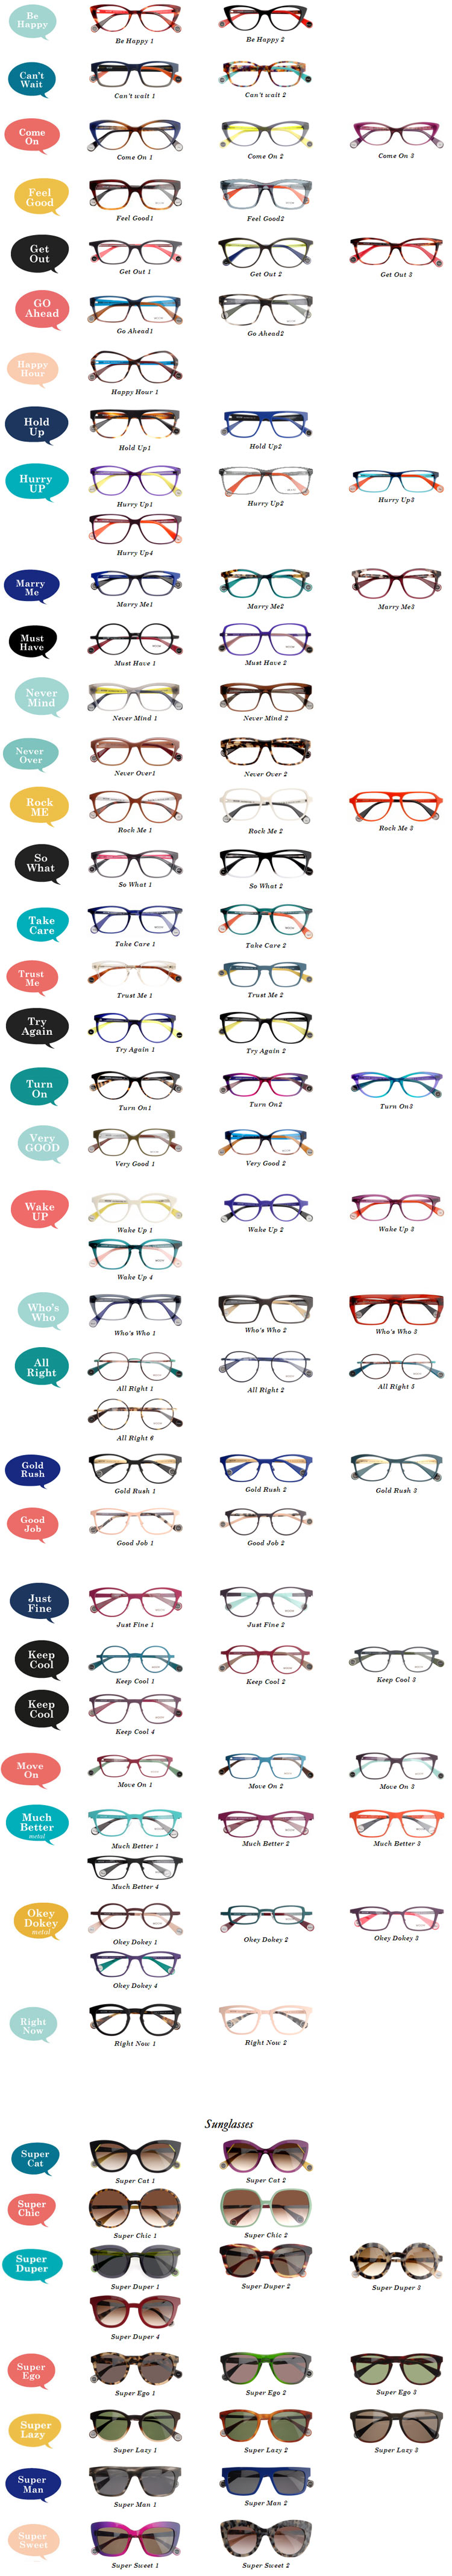 woow eyeglass frames